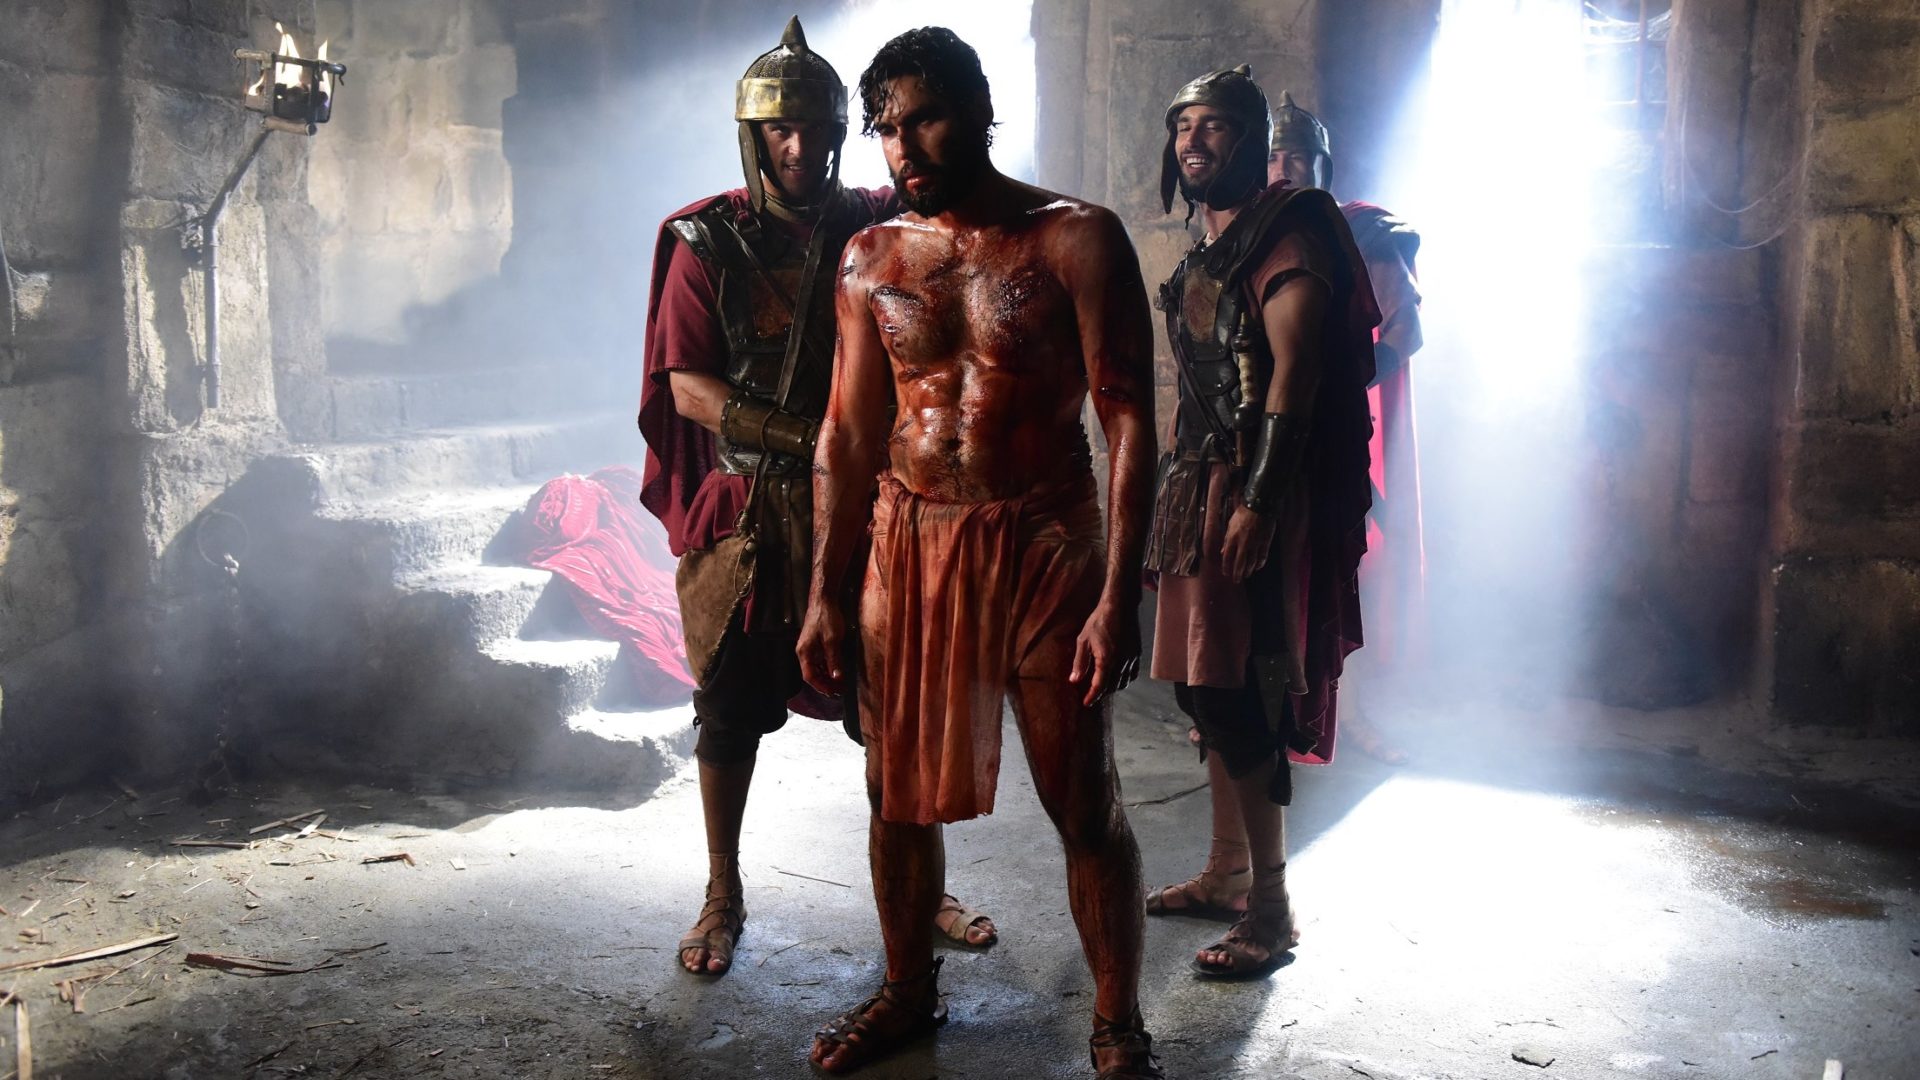 Jesus receberá coroa de espinhos ao ser humilhado por soldados romanos